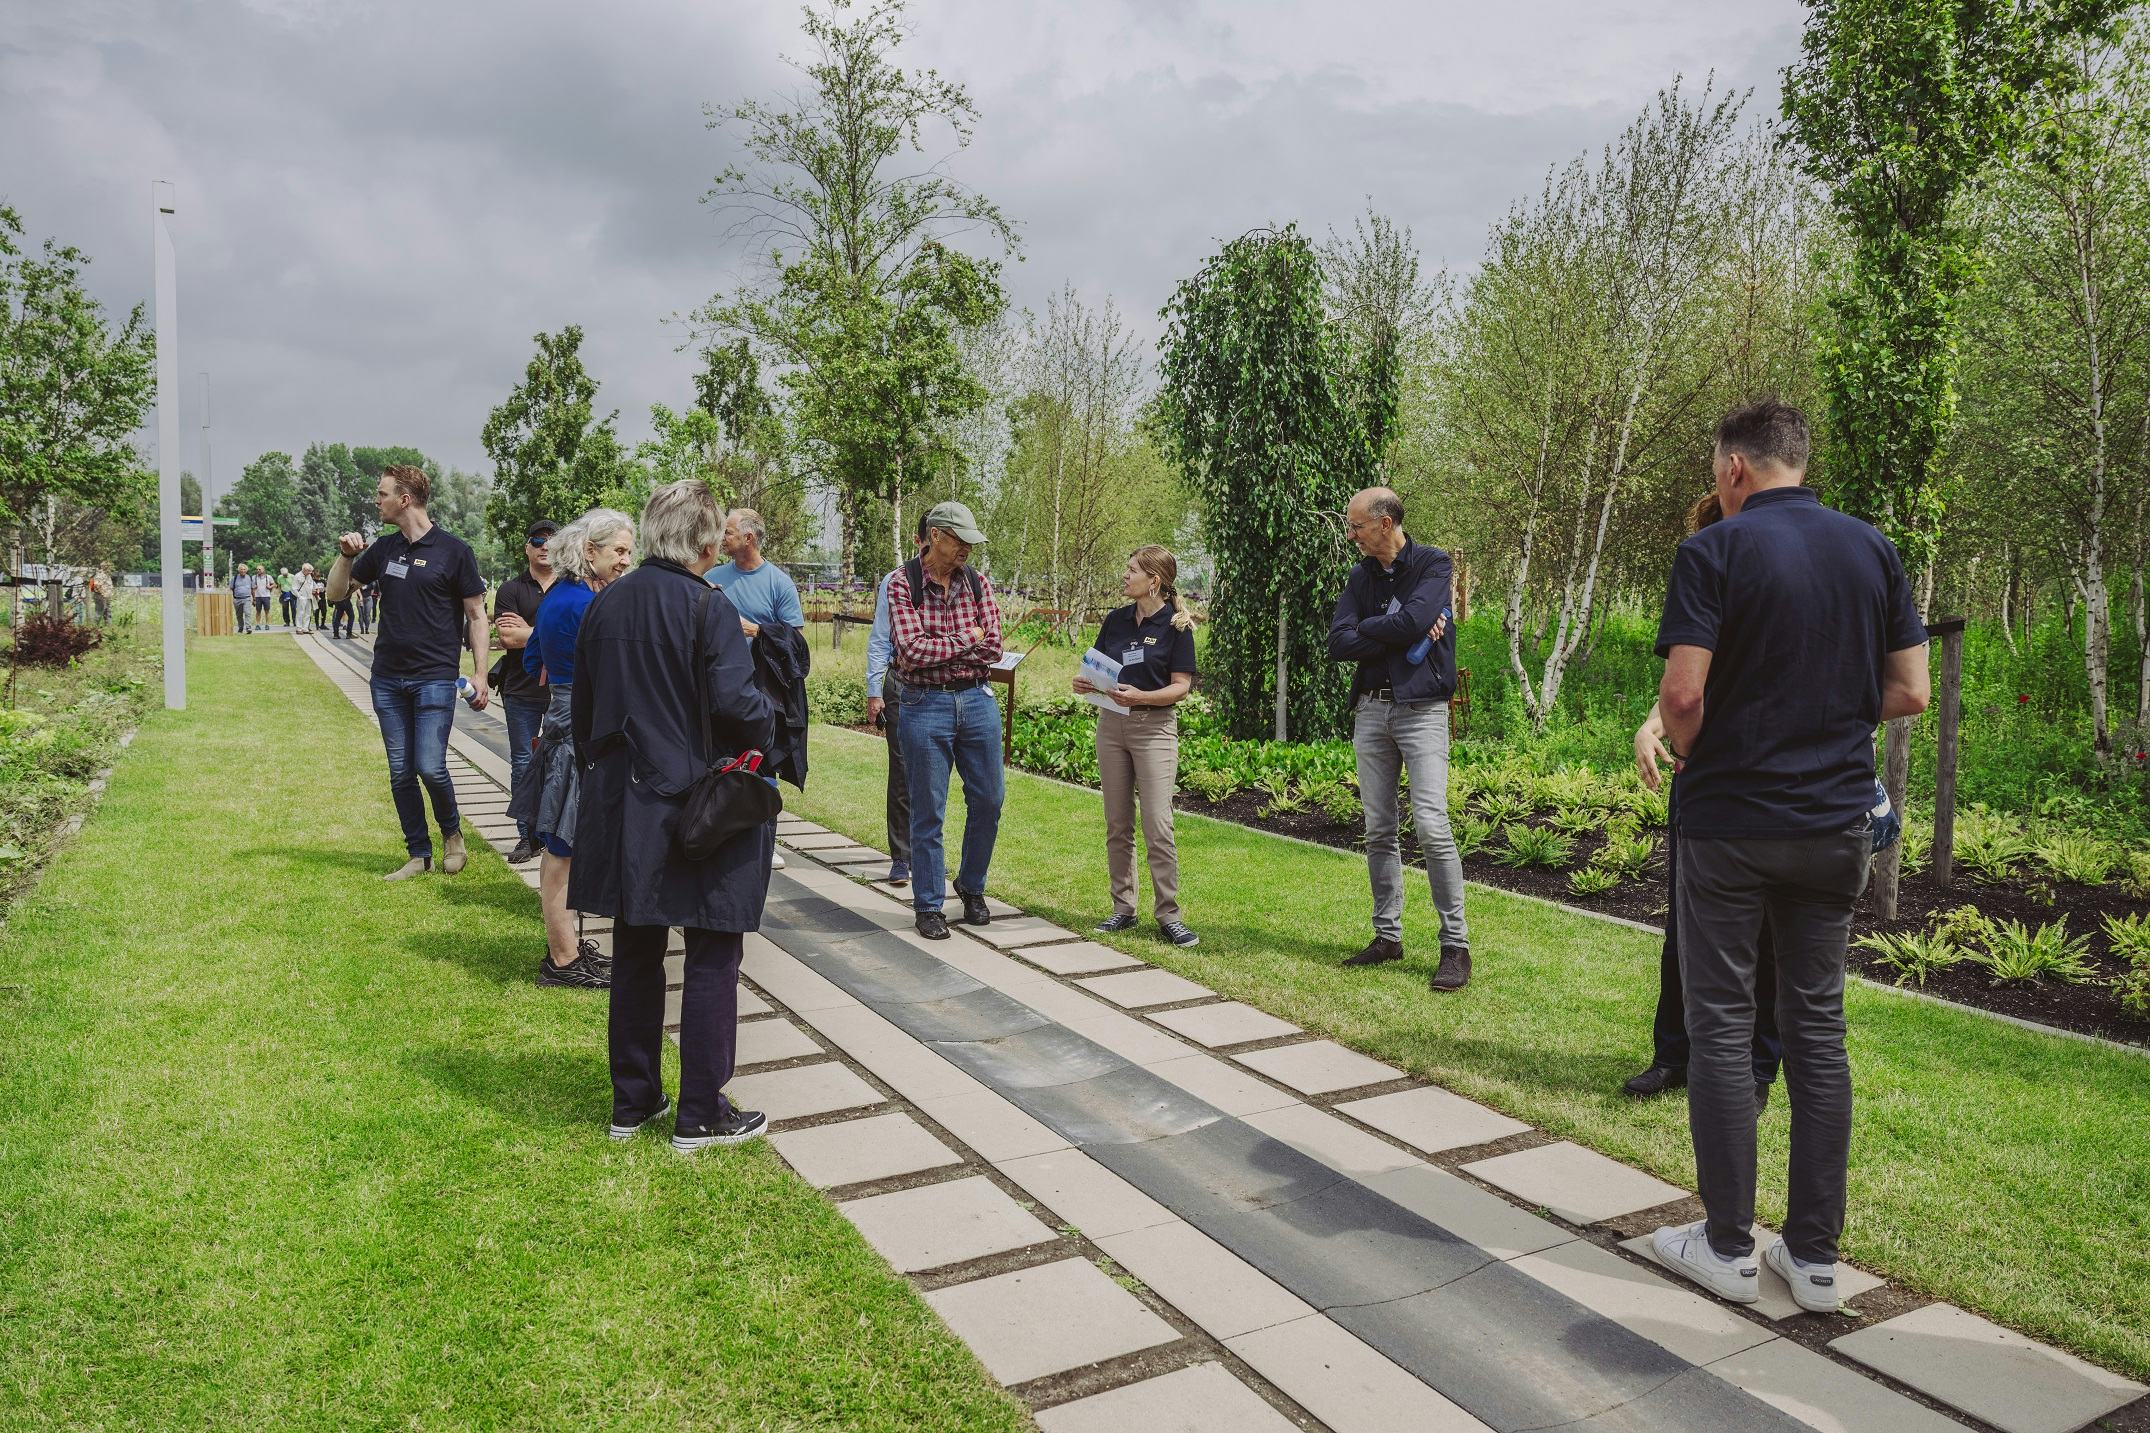 Boek buurman Verrassend genoeg Klimaatadaptieve open bestrating als basis voor toekomstige groene  stadswijk in Almere